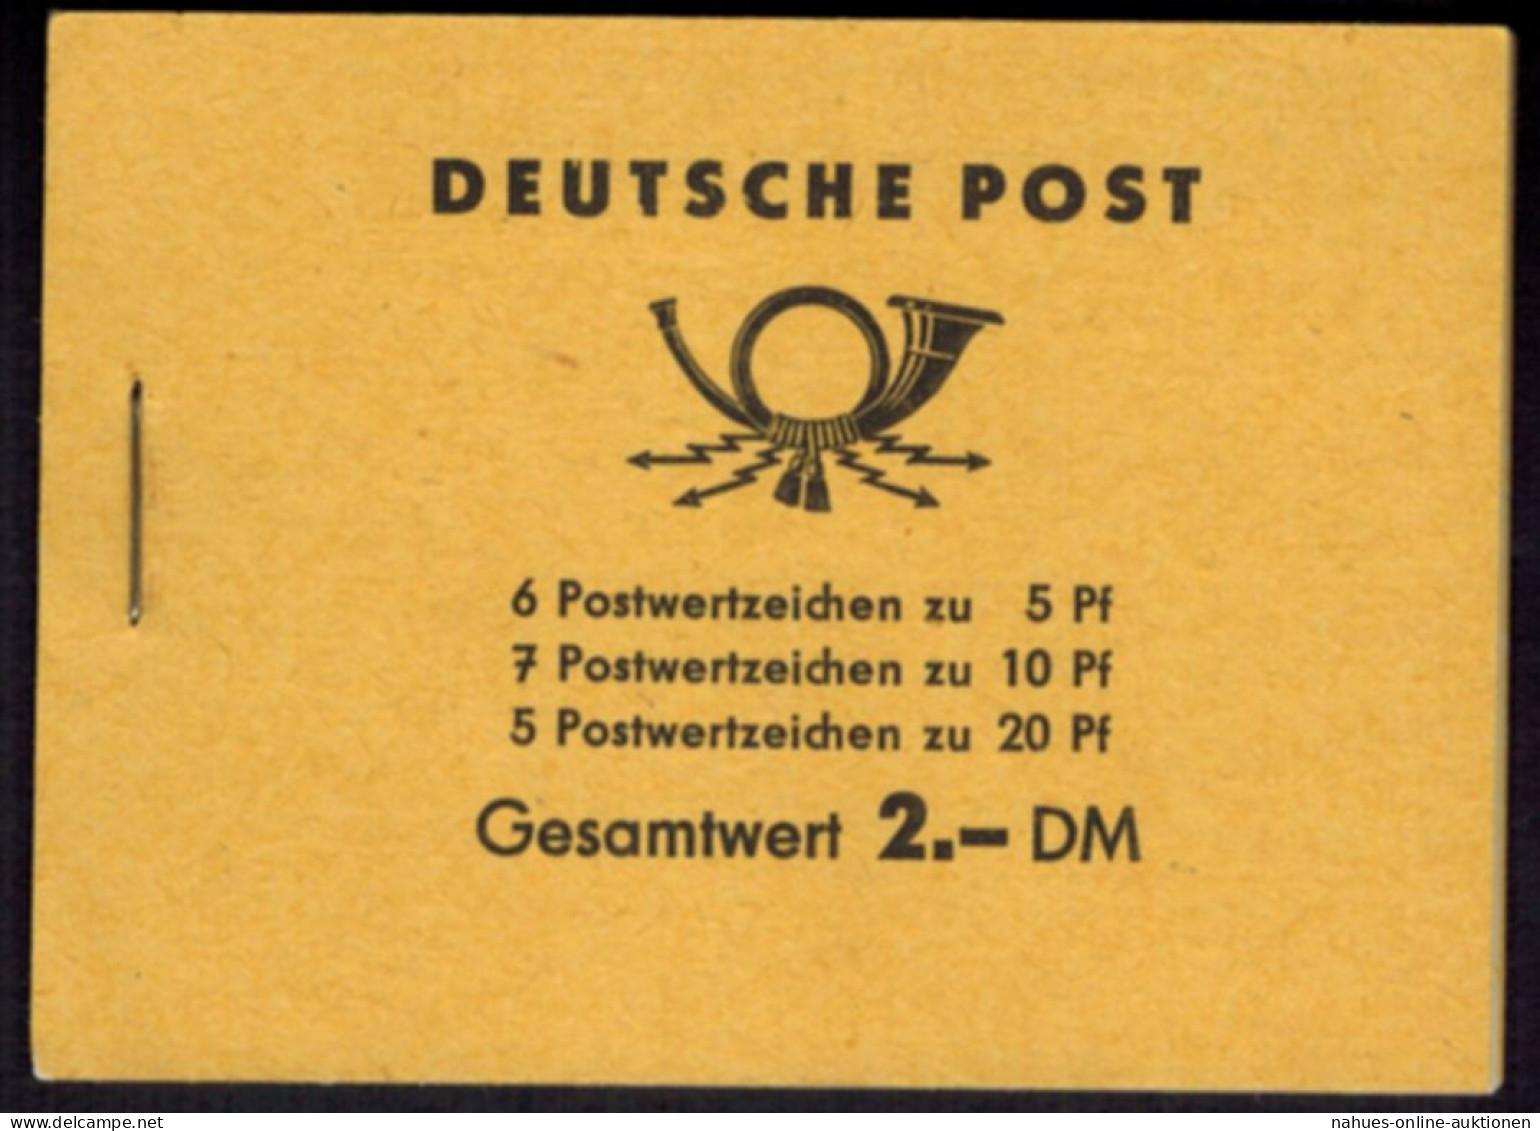 DDR Markenheftchen 3b2 Fünfjahresplan 1961 Tadellos Postfrisch - Booklets